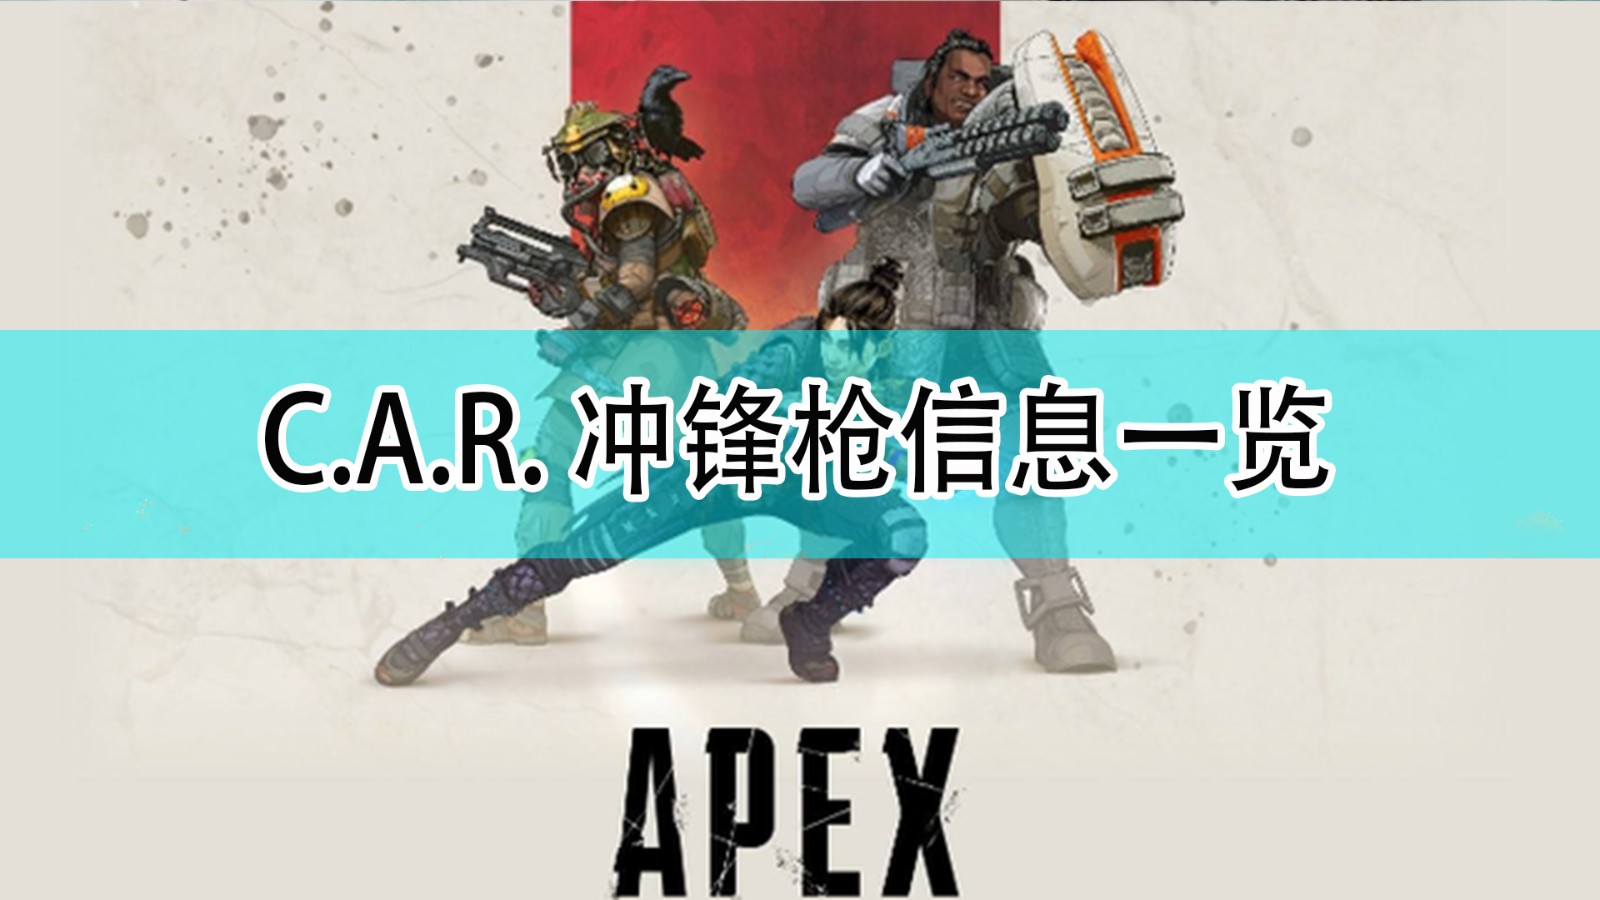 《Apex英雄》C.A.R. 冲锋枪信息一览